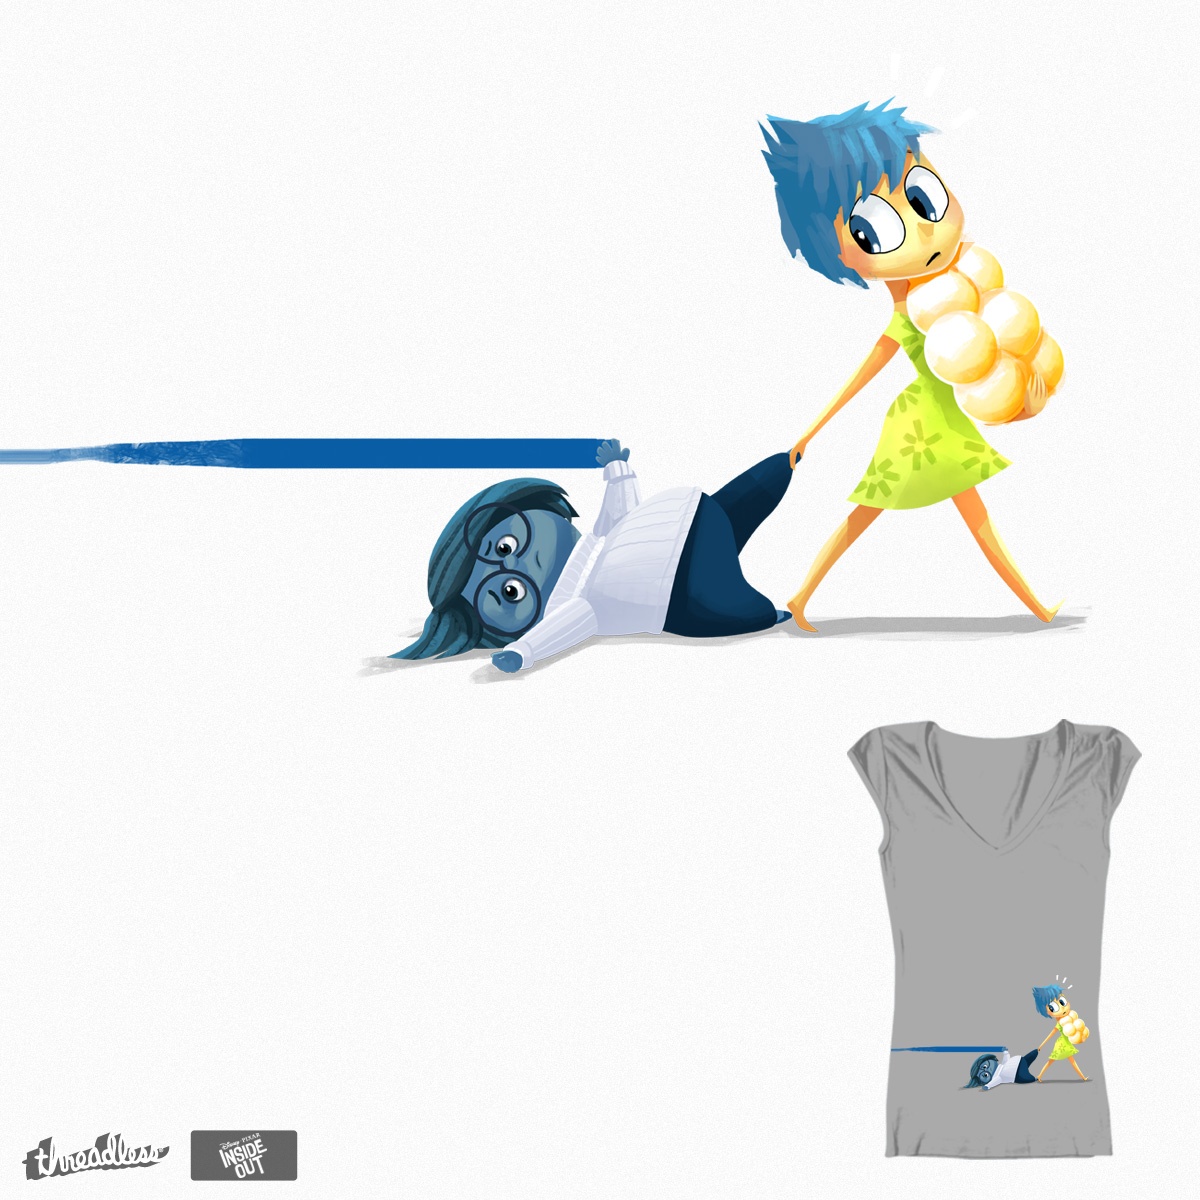 blue streak, a cool t-shirt design